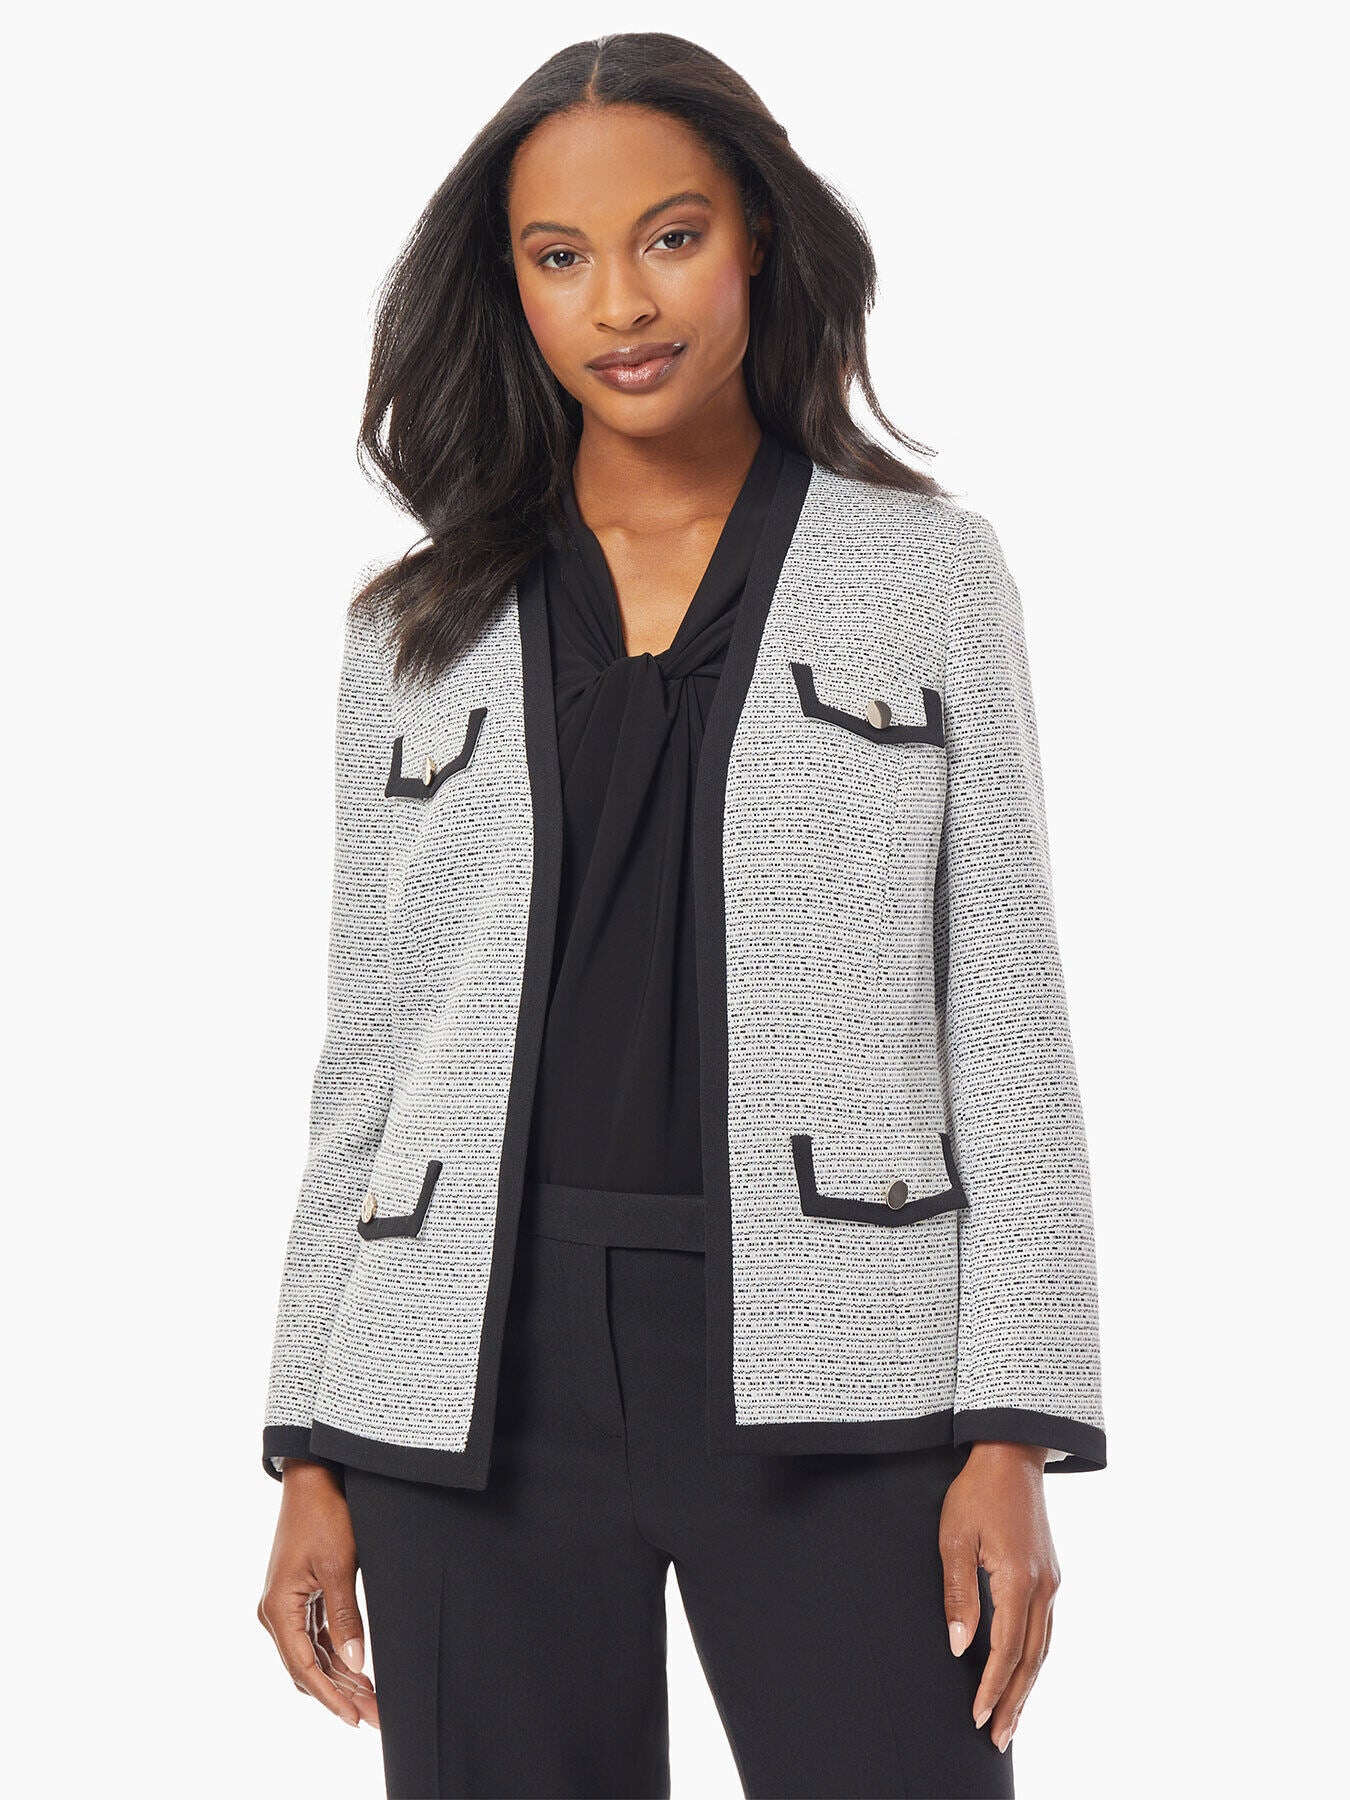 Women's Jackets on Sale - Tweed Jacket